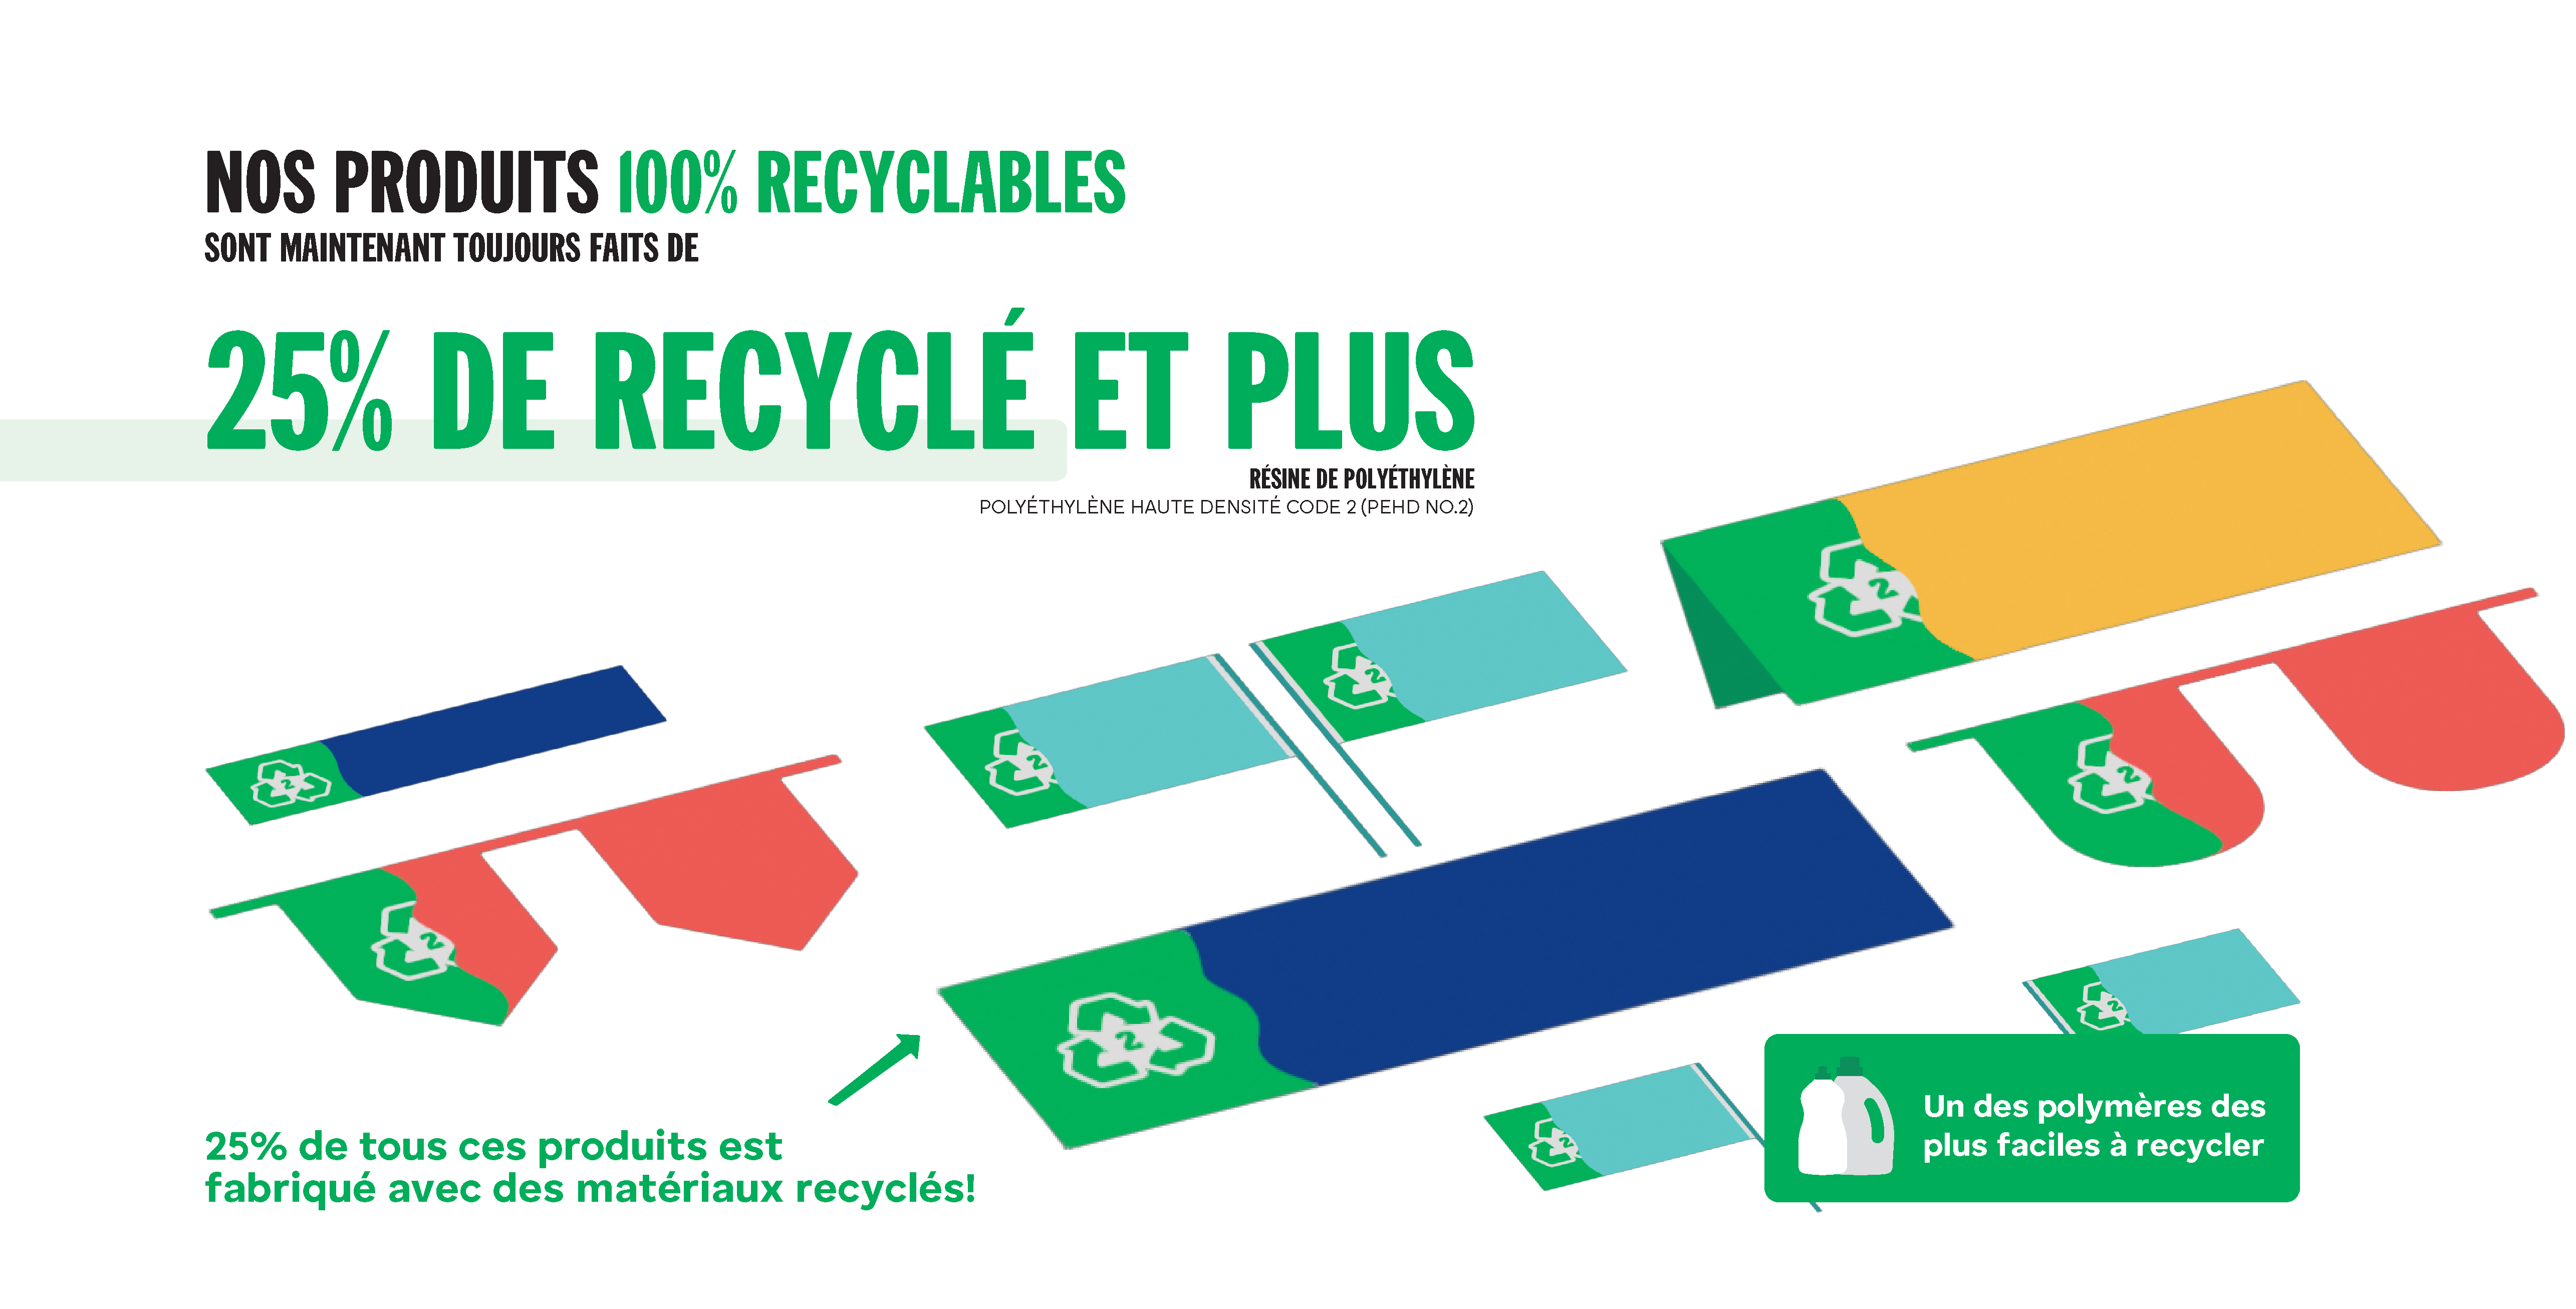 Tous nos produits contiennent un minimum de 25% de matériau recyclé.